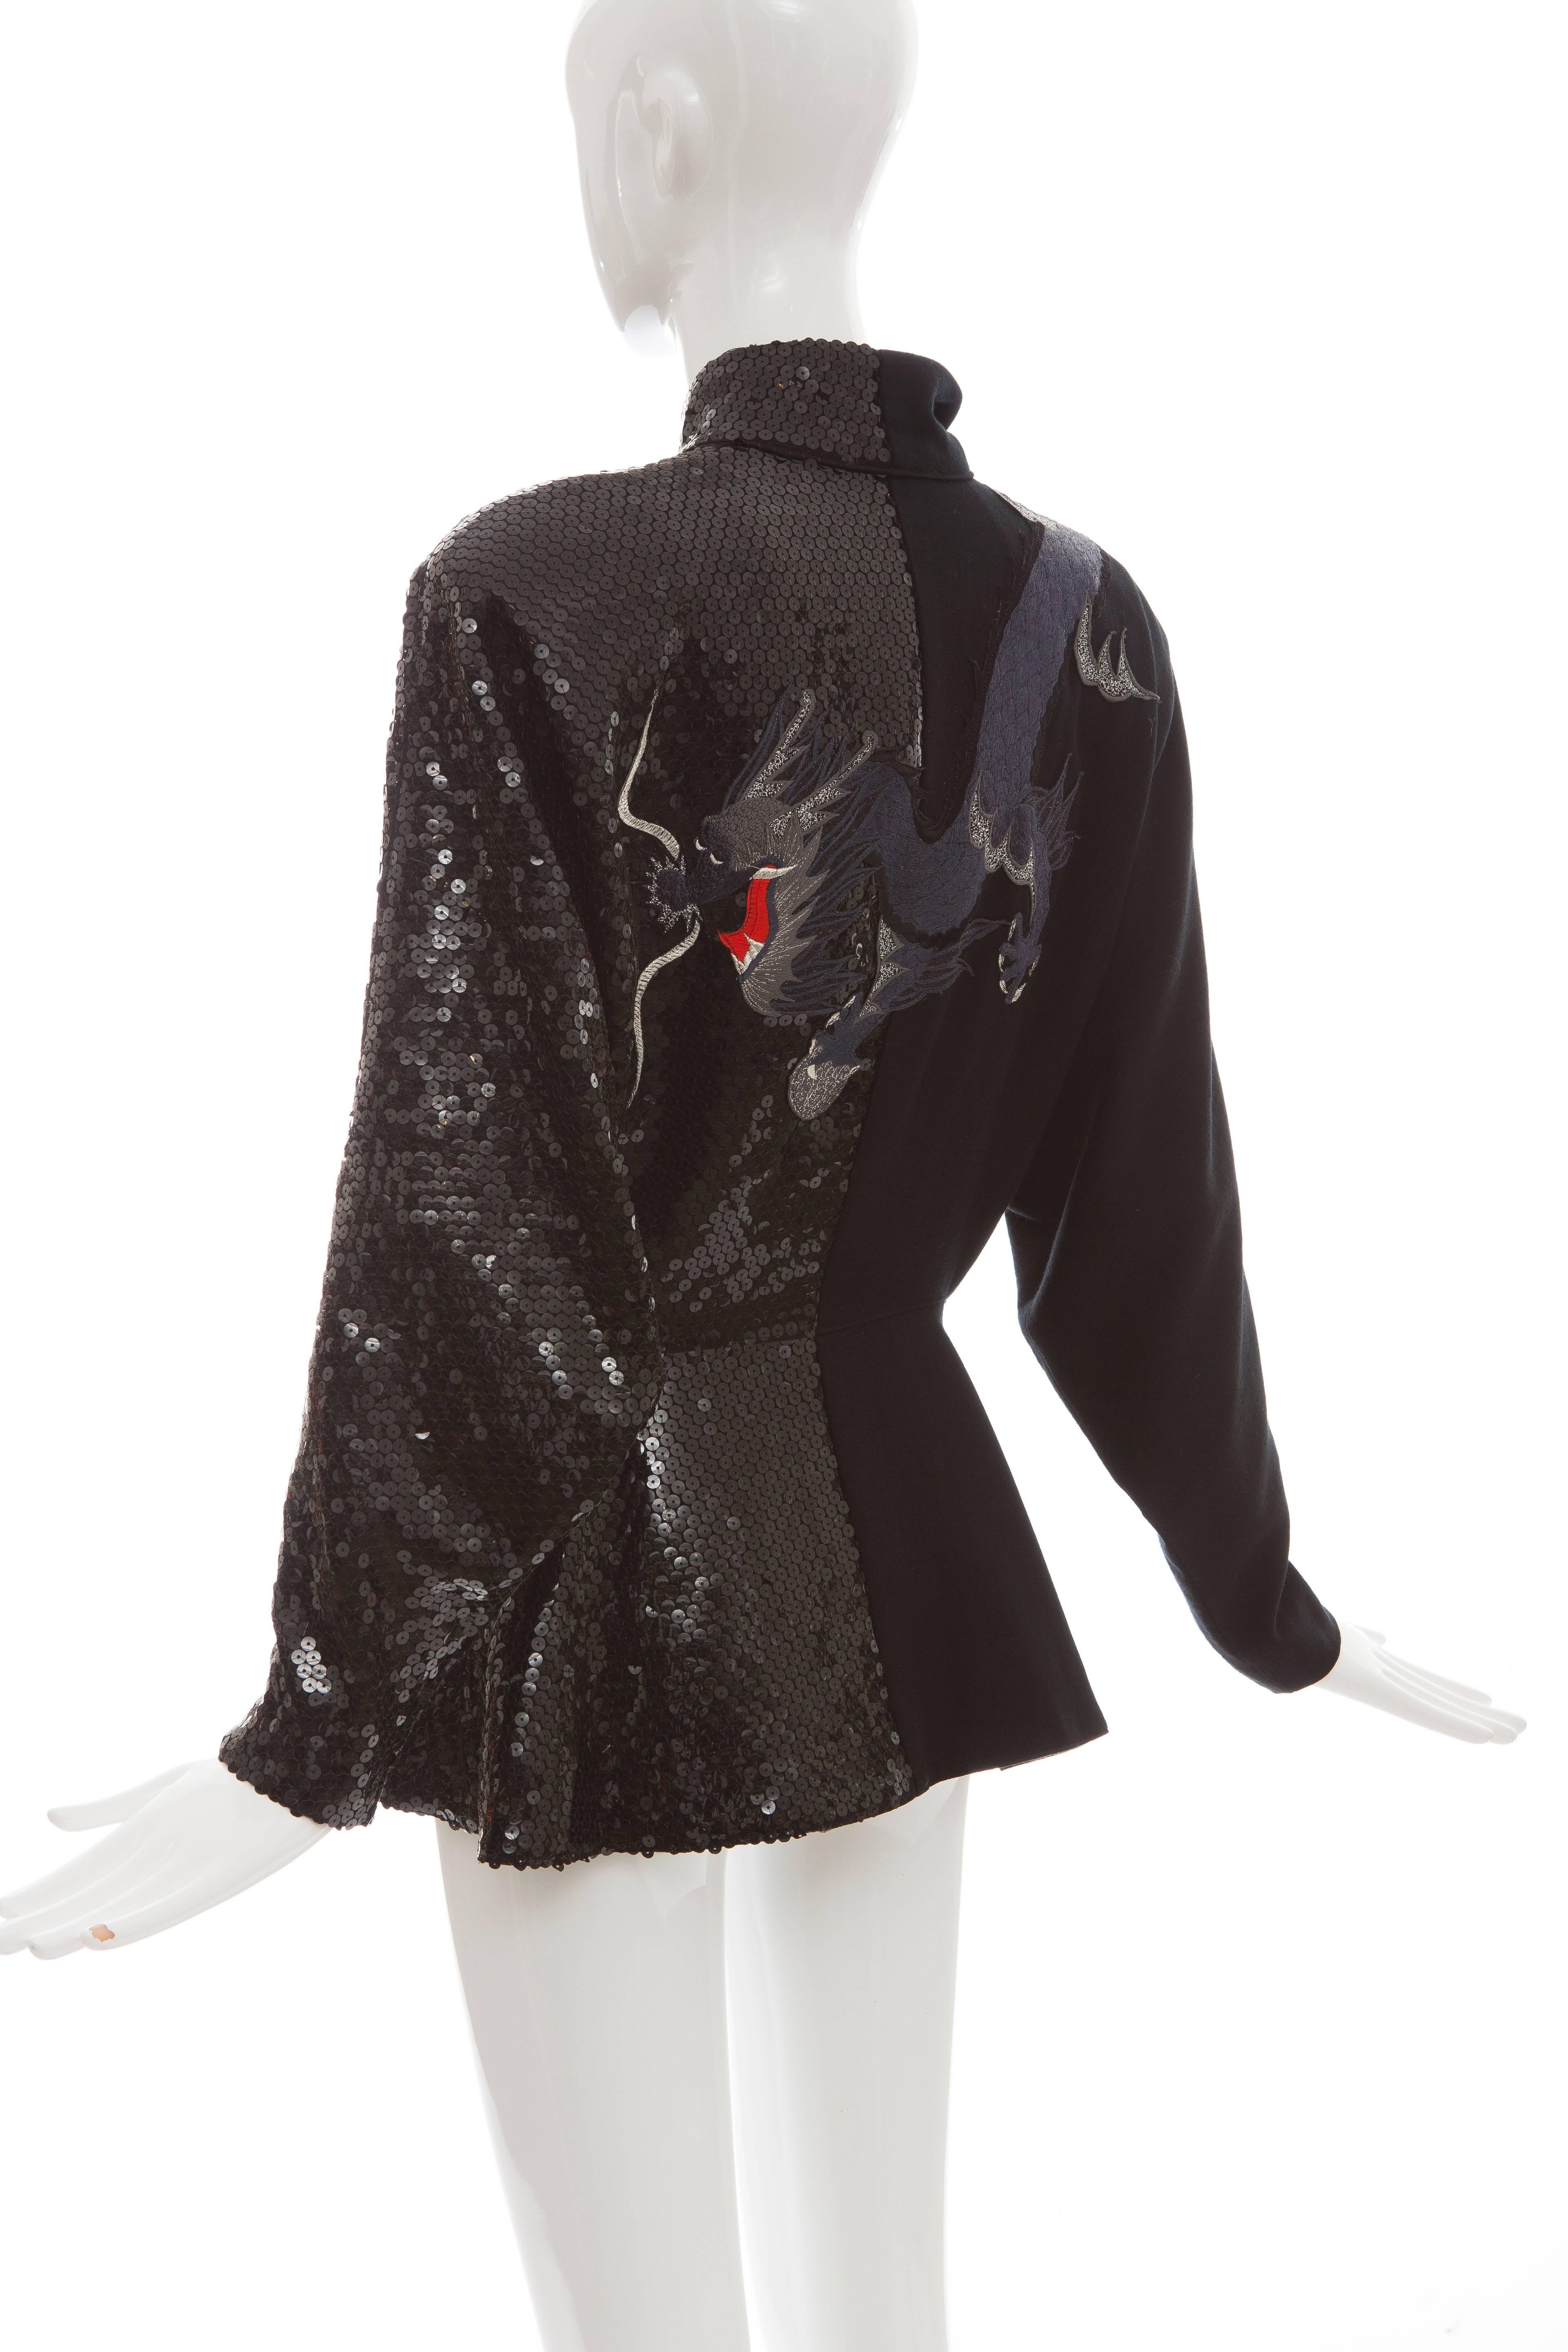 Kansai Yamamoto Black Embroidered Dragon & Sequins Skirt Suit, Circa 1980's 3